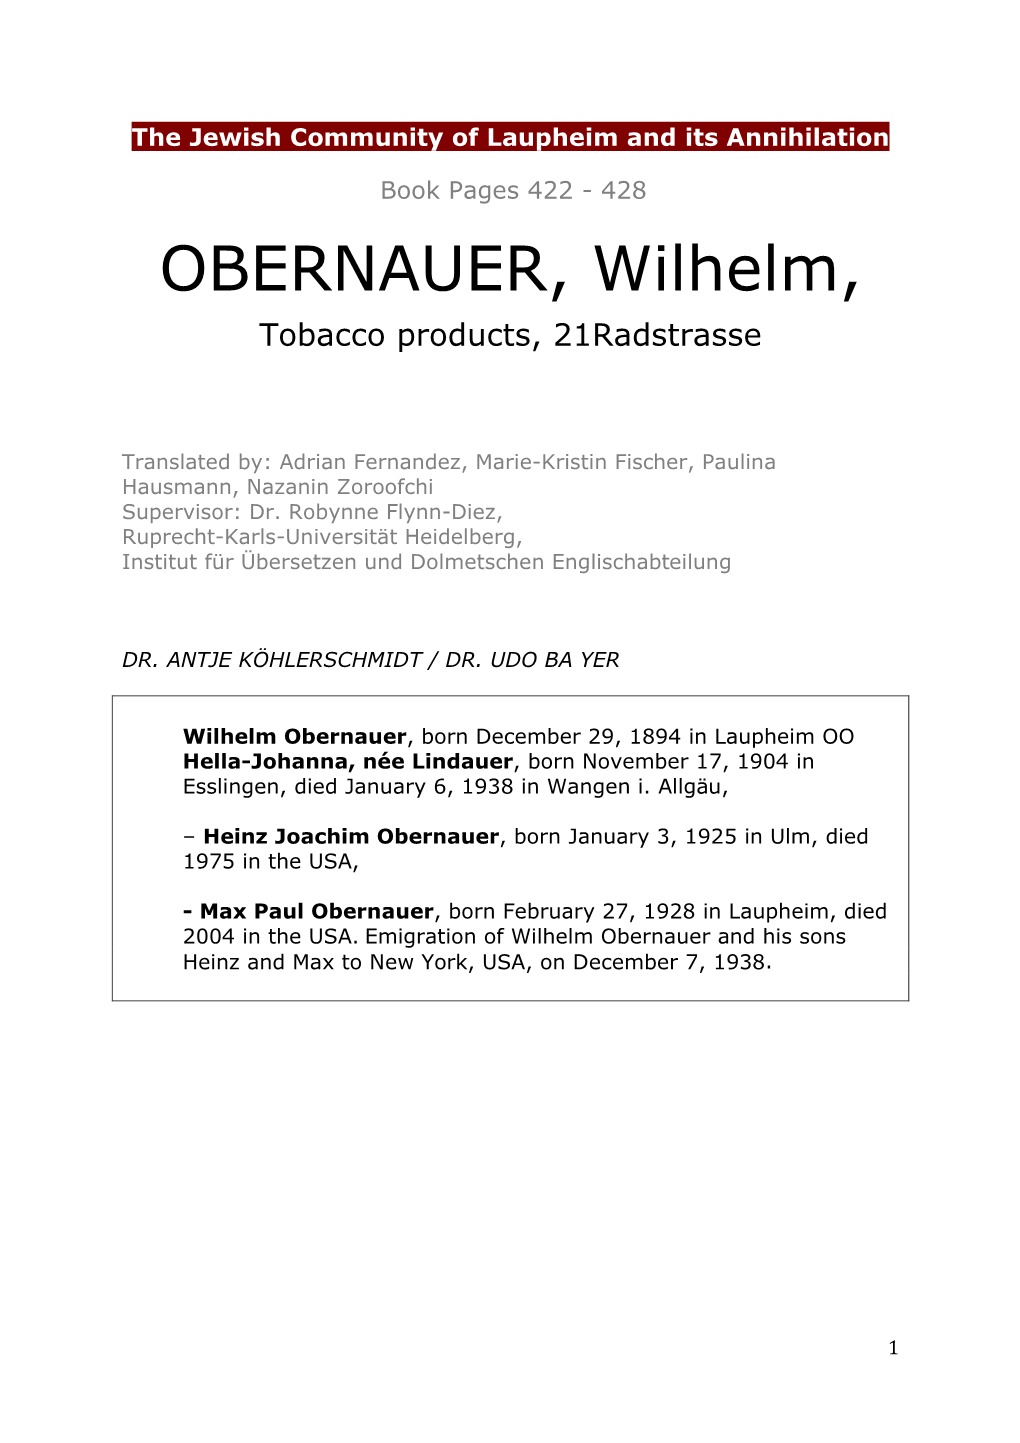 72E Obernauer Wilhelm